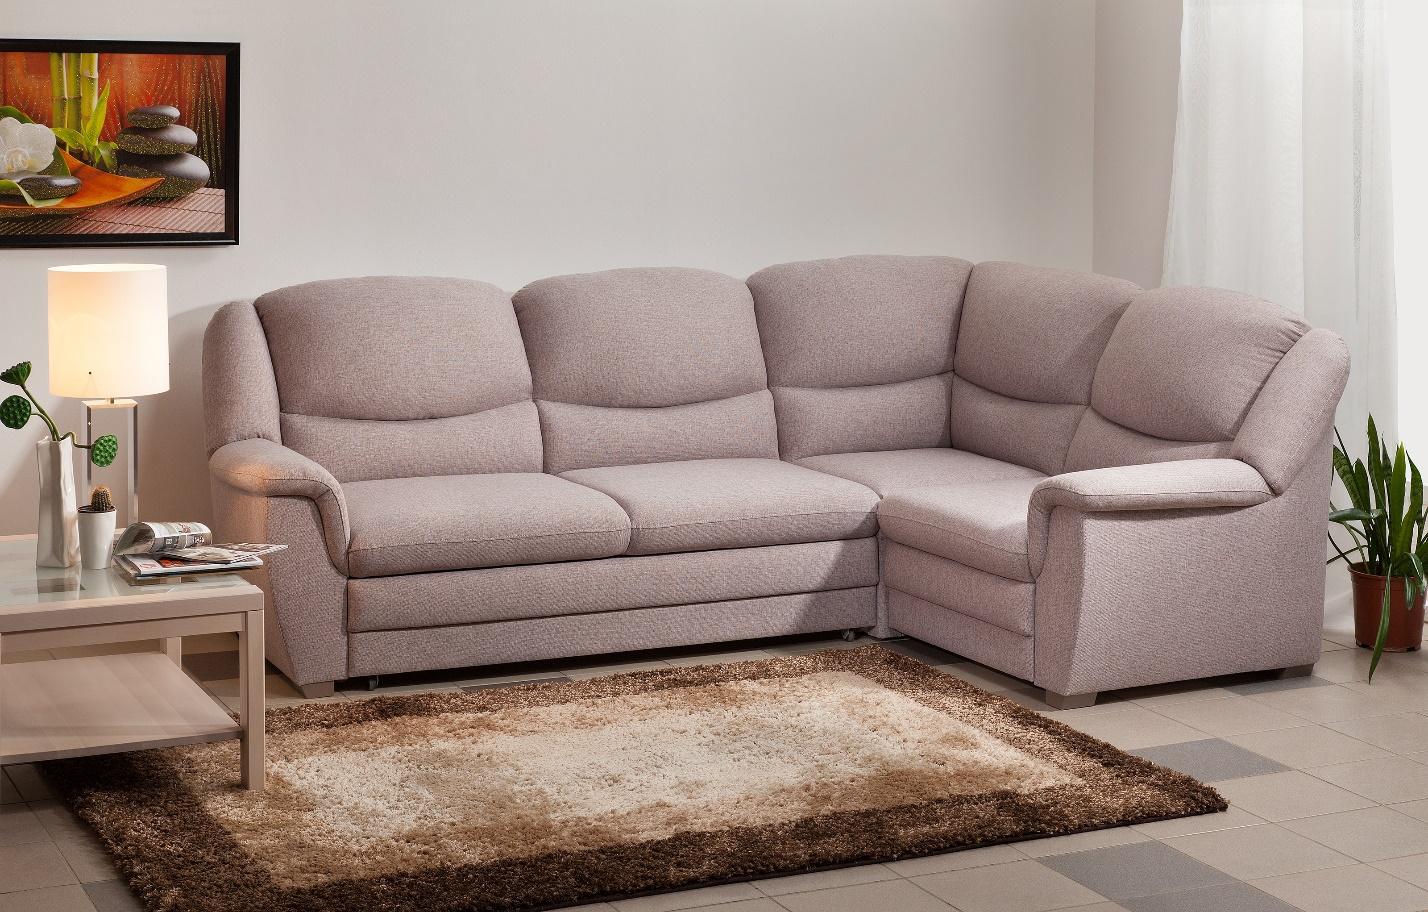 Как выбрать угловой диван?